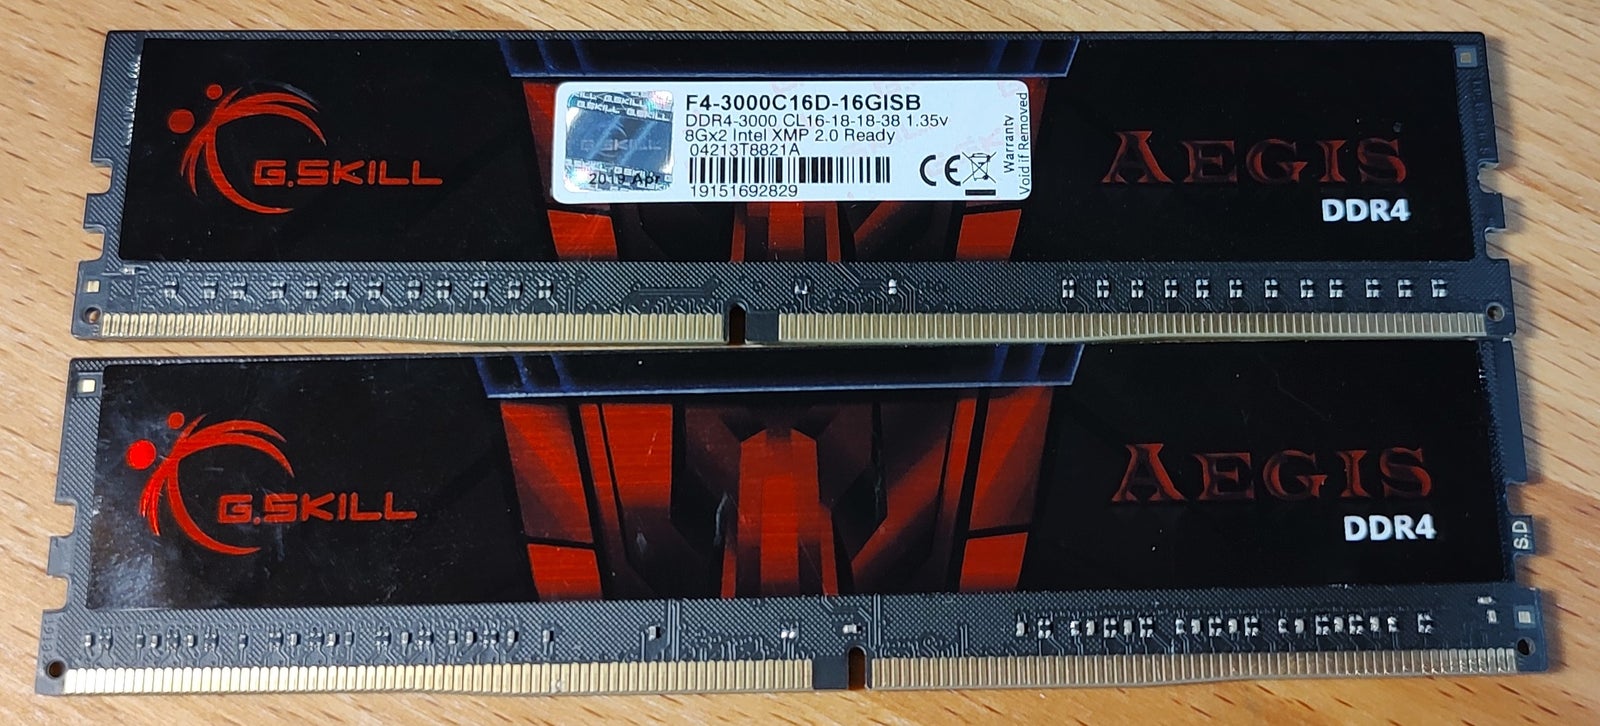 G.Skill, 16GB, DDR4 SDRAM